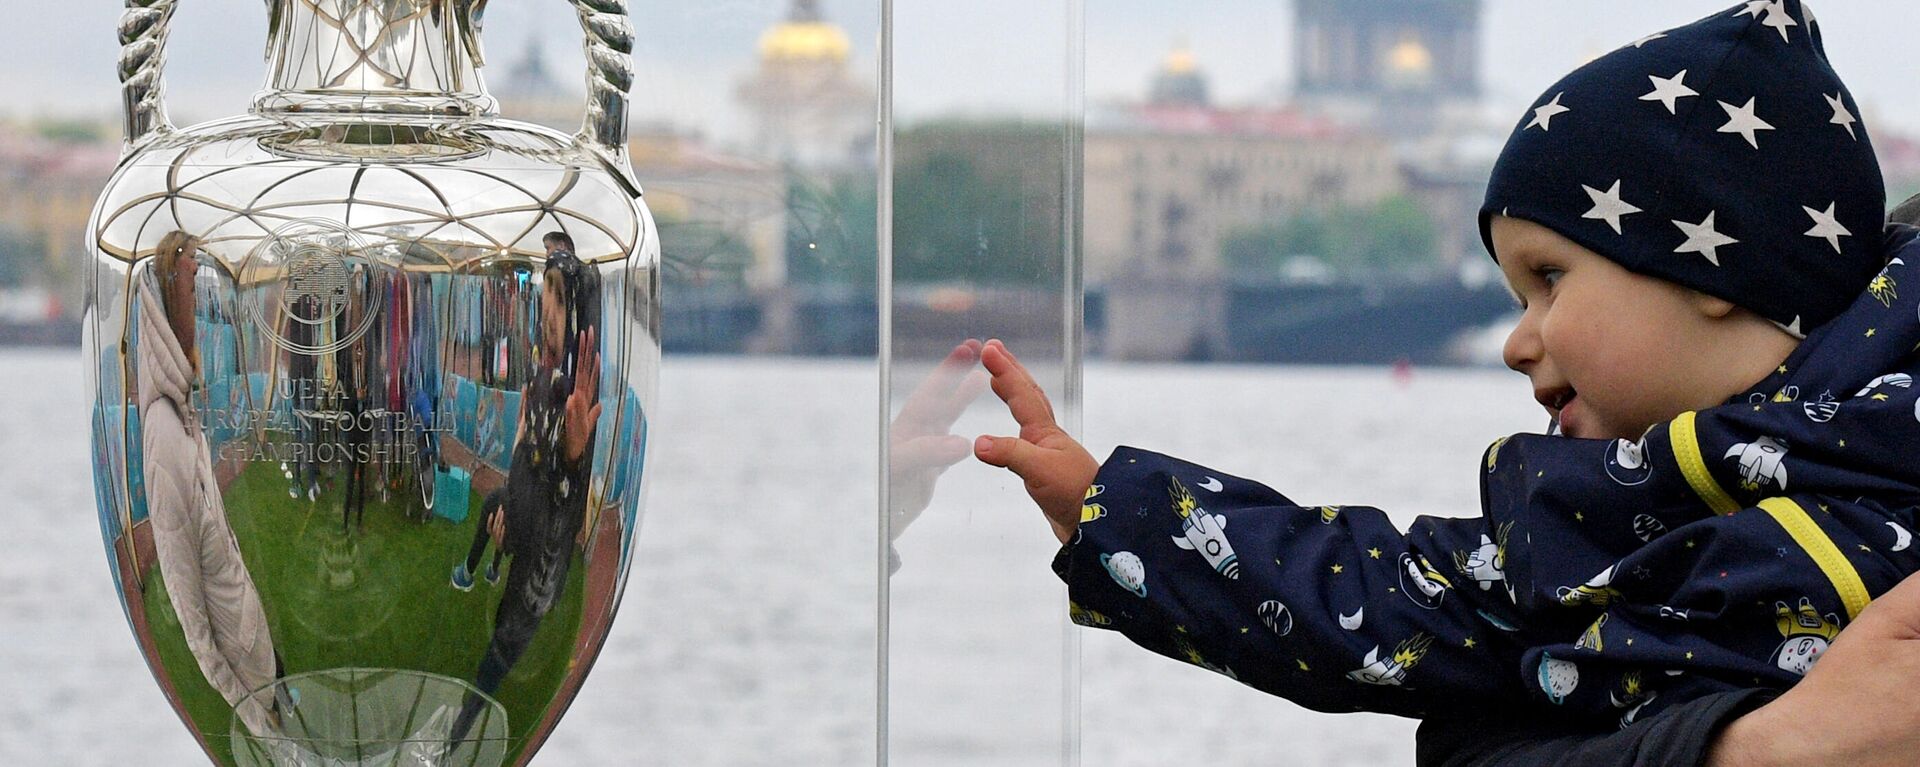 Ребенок рядом с кубком Европы по футболу, представленным в Санкт-Петербурге - Sputnik Латвия, 1920, 02.06.2021